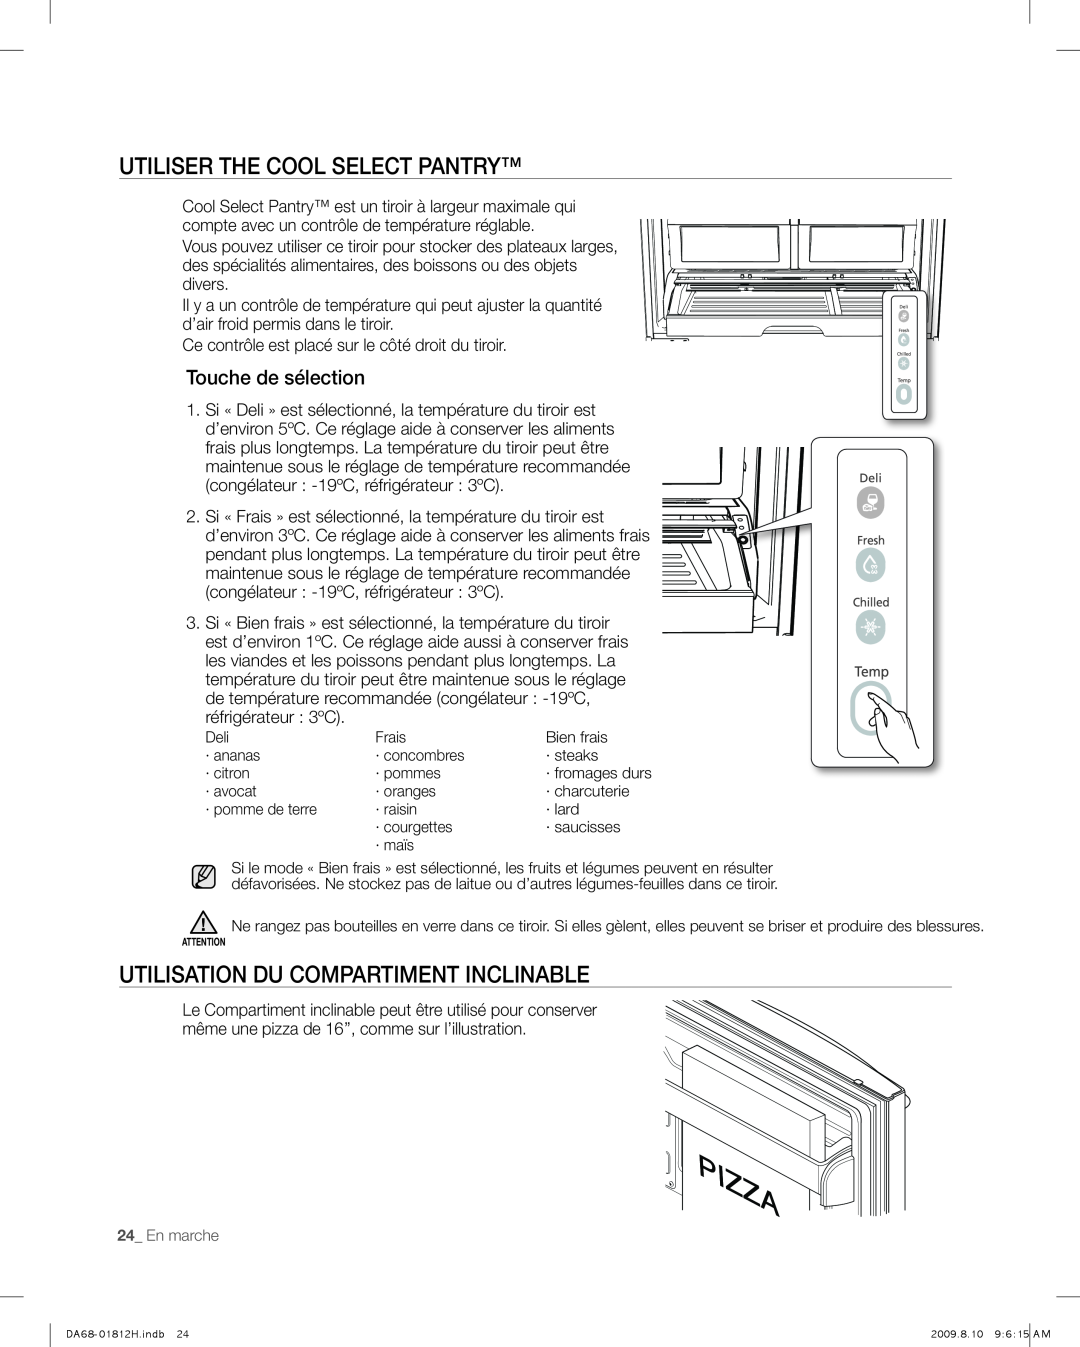 Samsung RF263 user manual utIlISeR THE COOL SELECT PANTRY, utIlISAtIoN du CoMpARtIMeNt INClINAble, Touche de sélection 